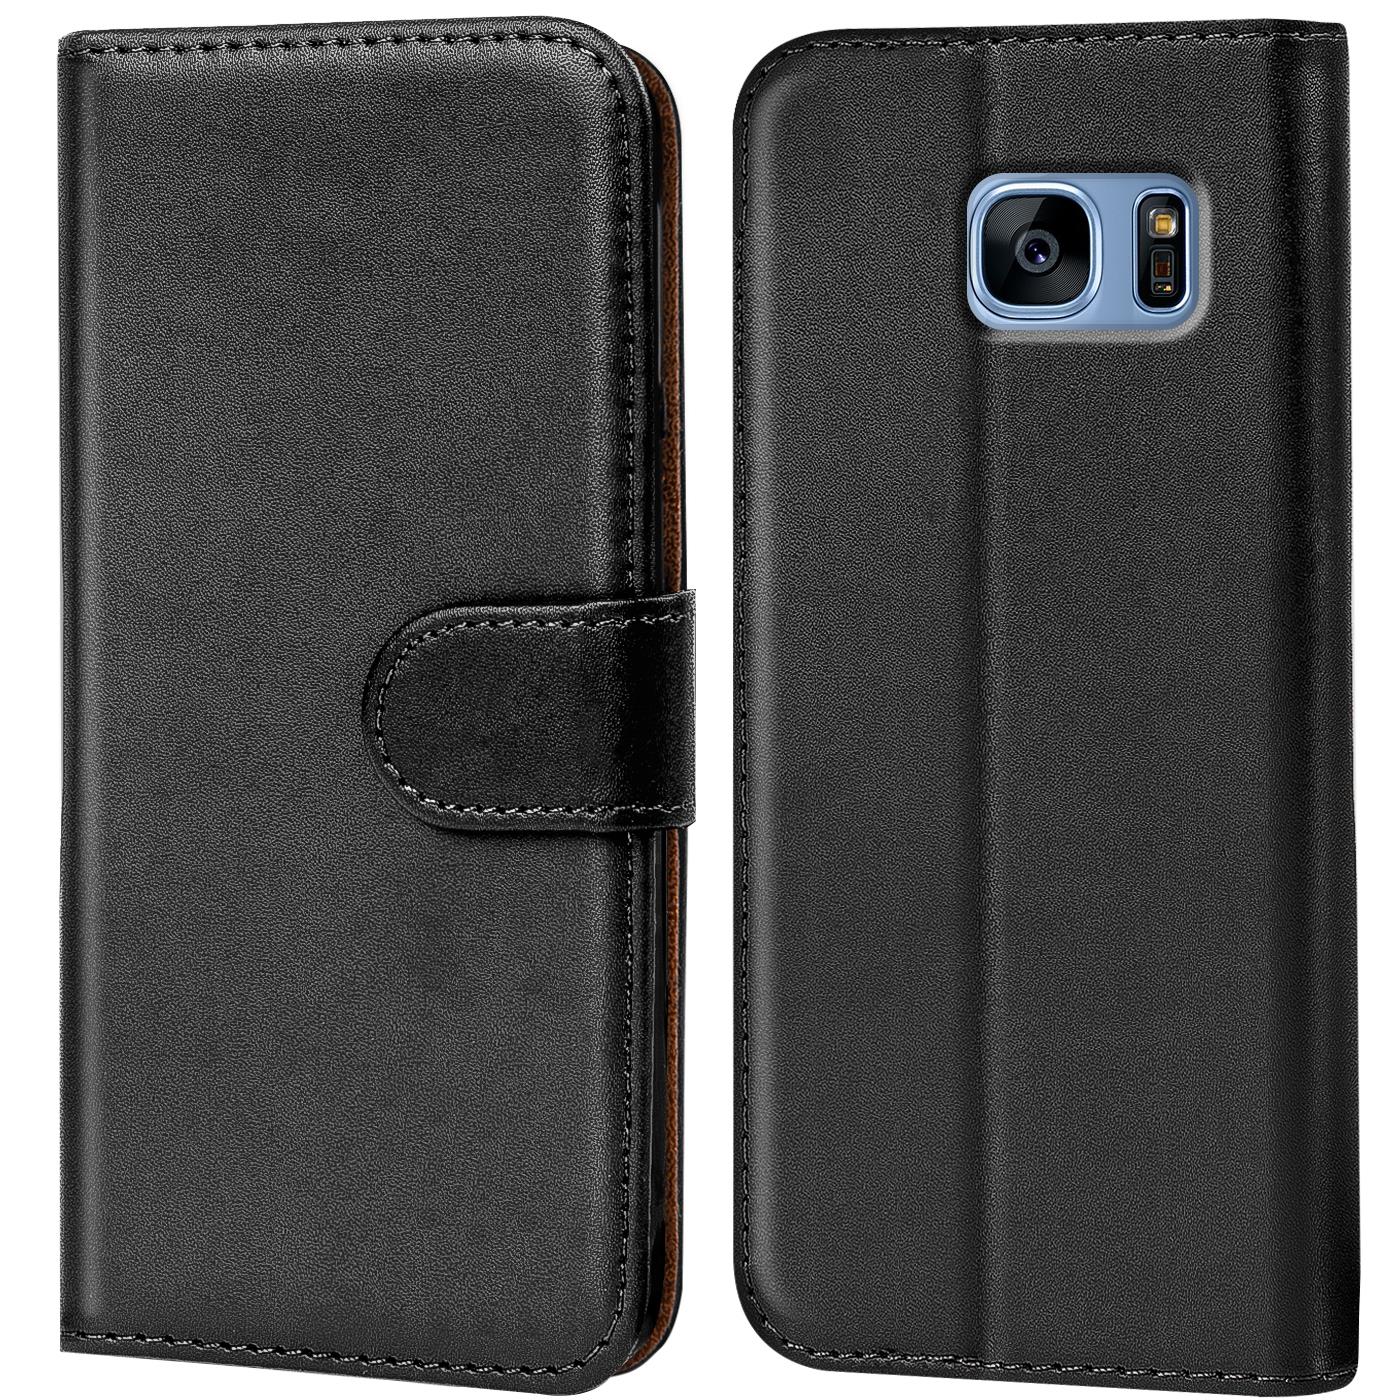 Grandoin Galaxy S7 Edge Hülle Handyhülle im Brieftasche-Stil für Samsung Galaxy S7 Edge Handytasche PU Leder Flip Cover 3D Bunte Muster Book Case Schutzhülle Etui Case Panda 